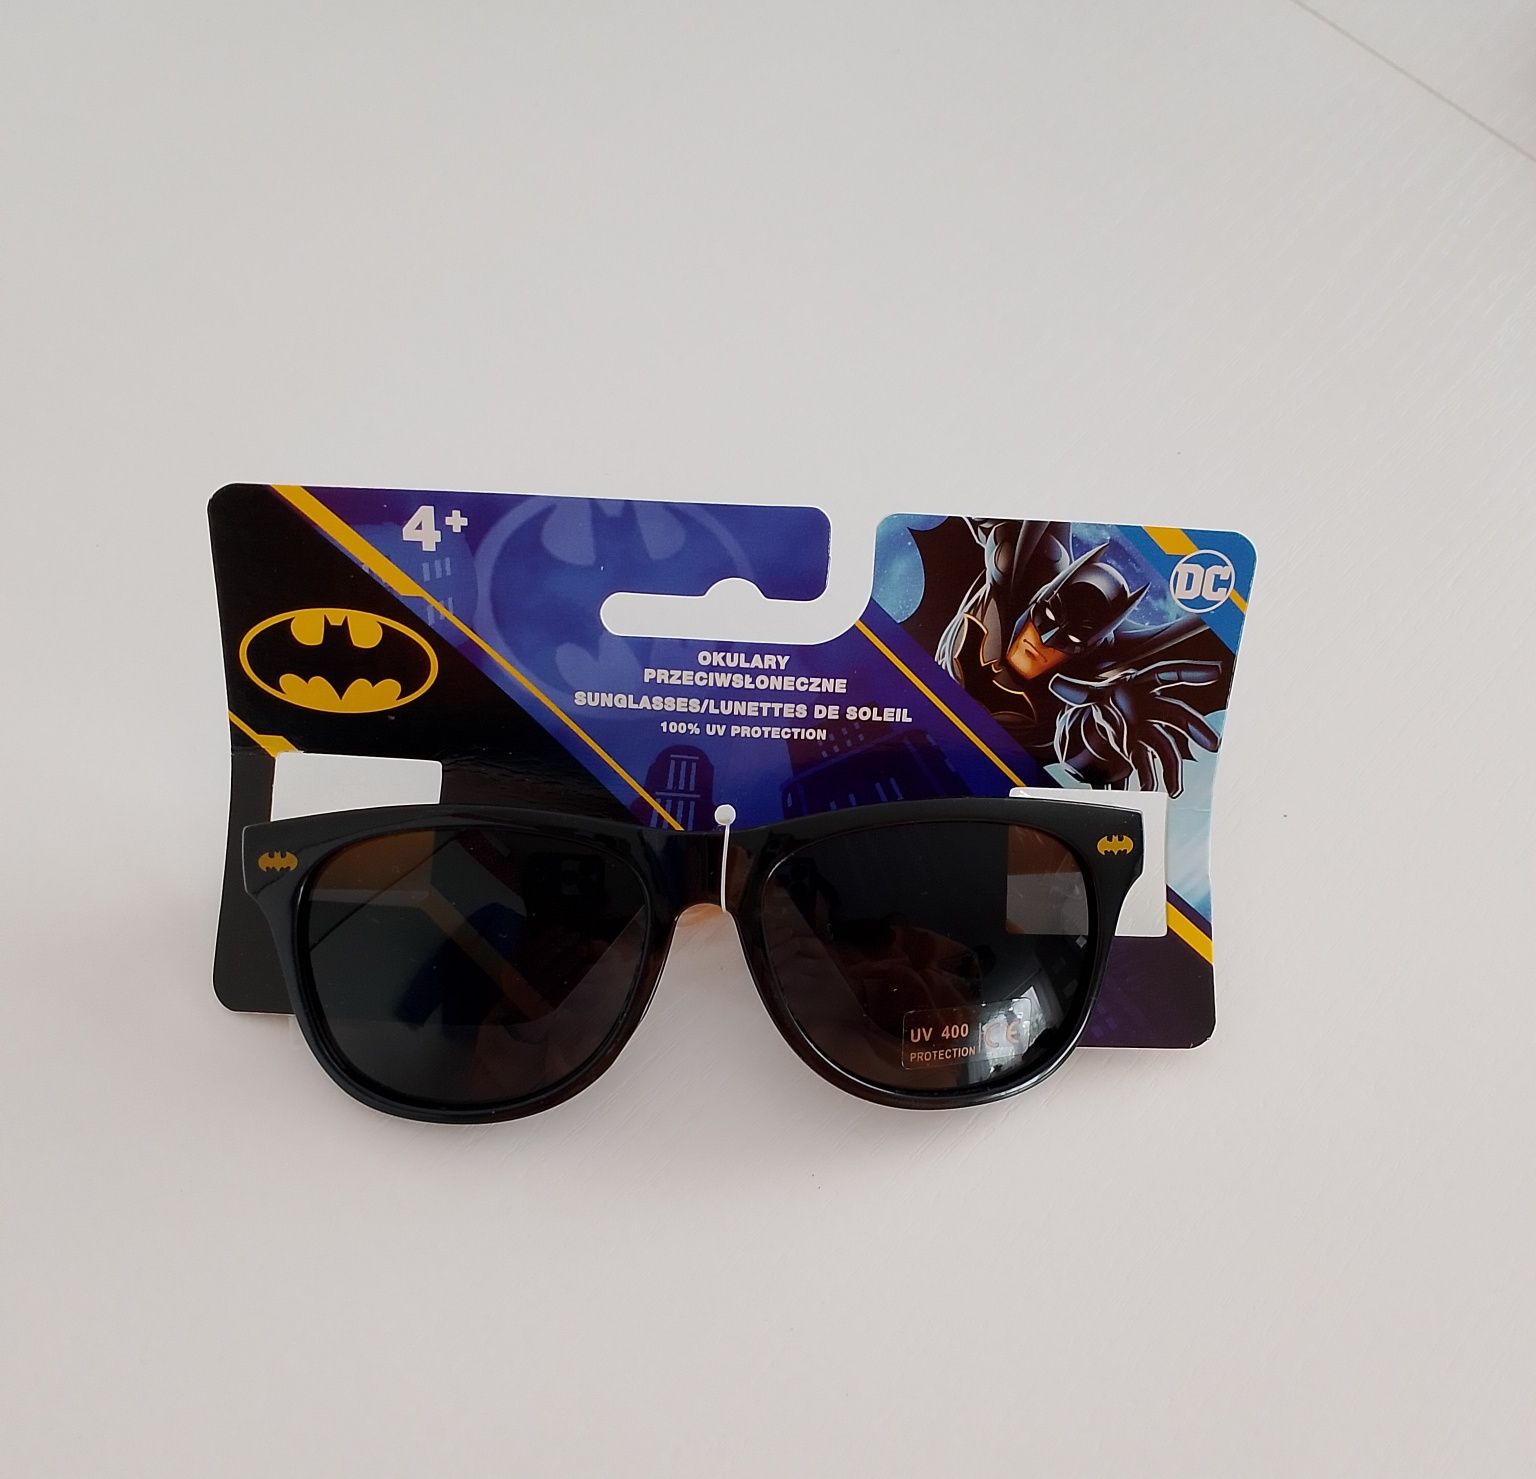 Okulary przeciwsłoneczne chłopięce Batman.
Wiek 4+